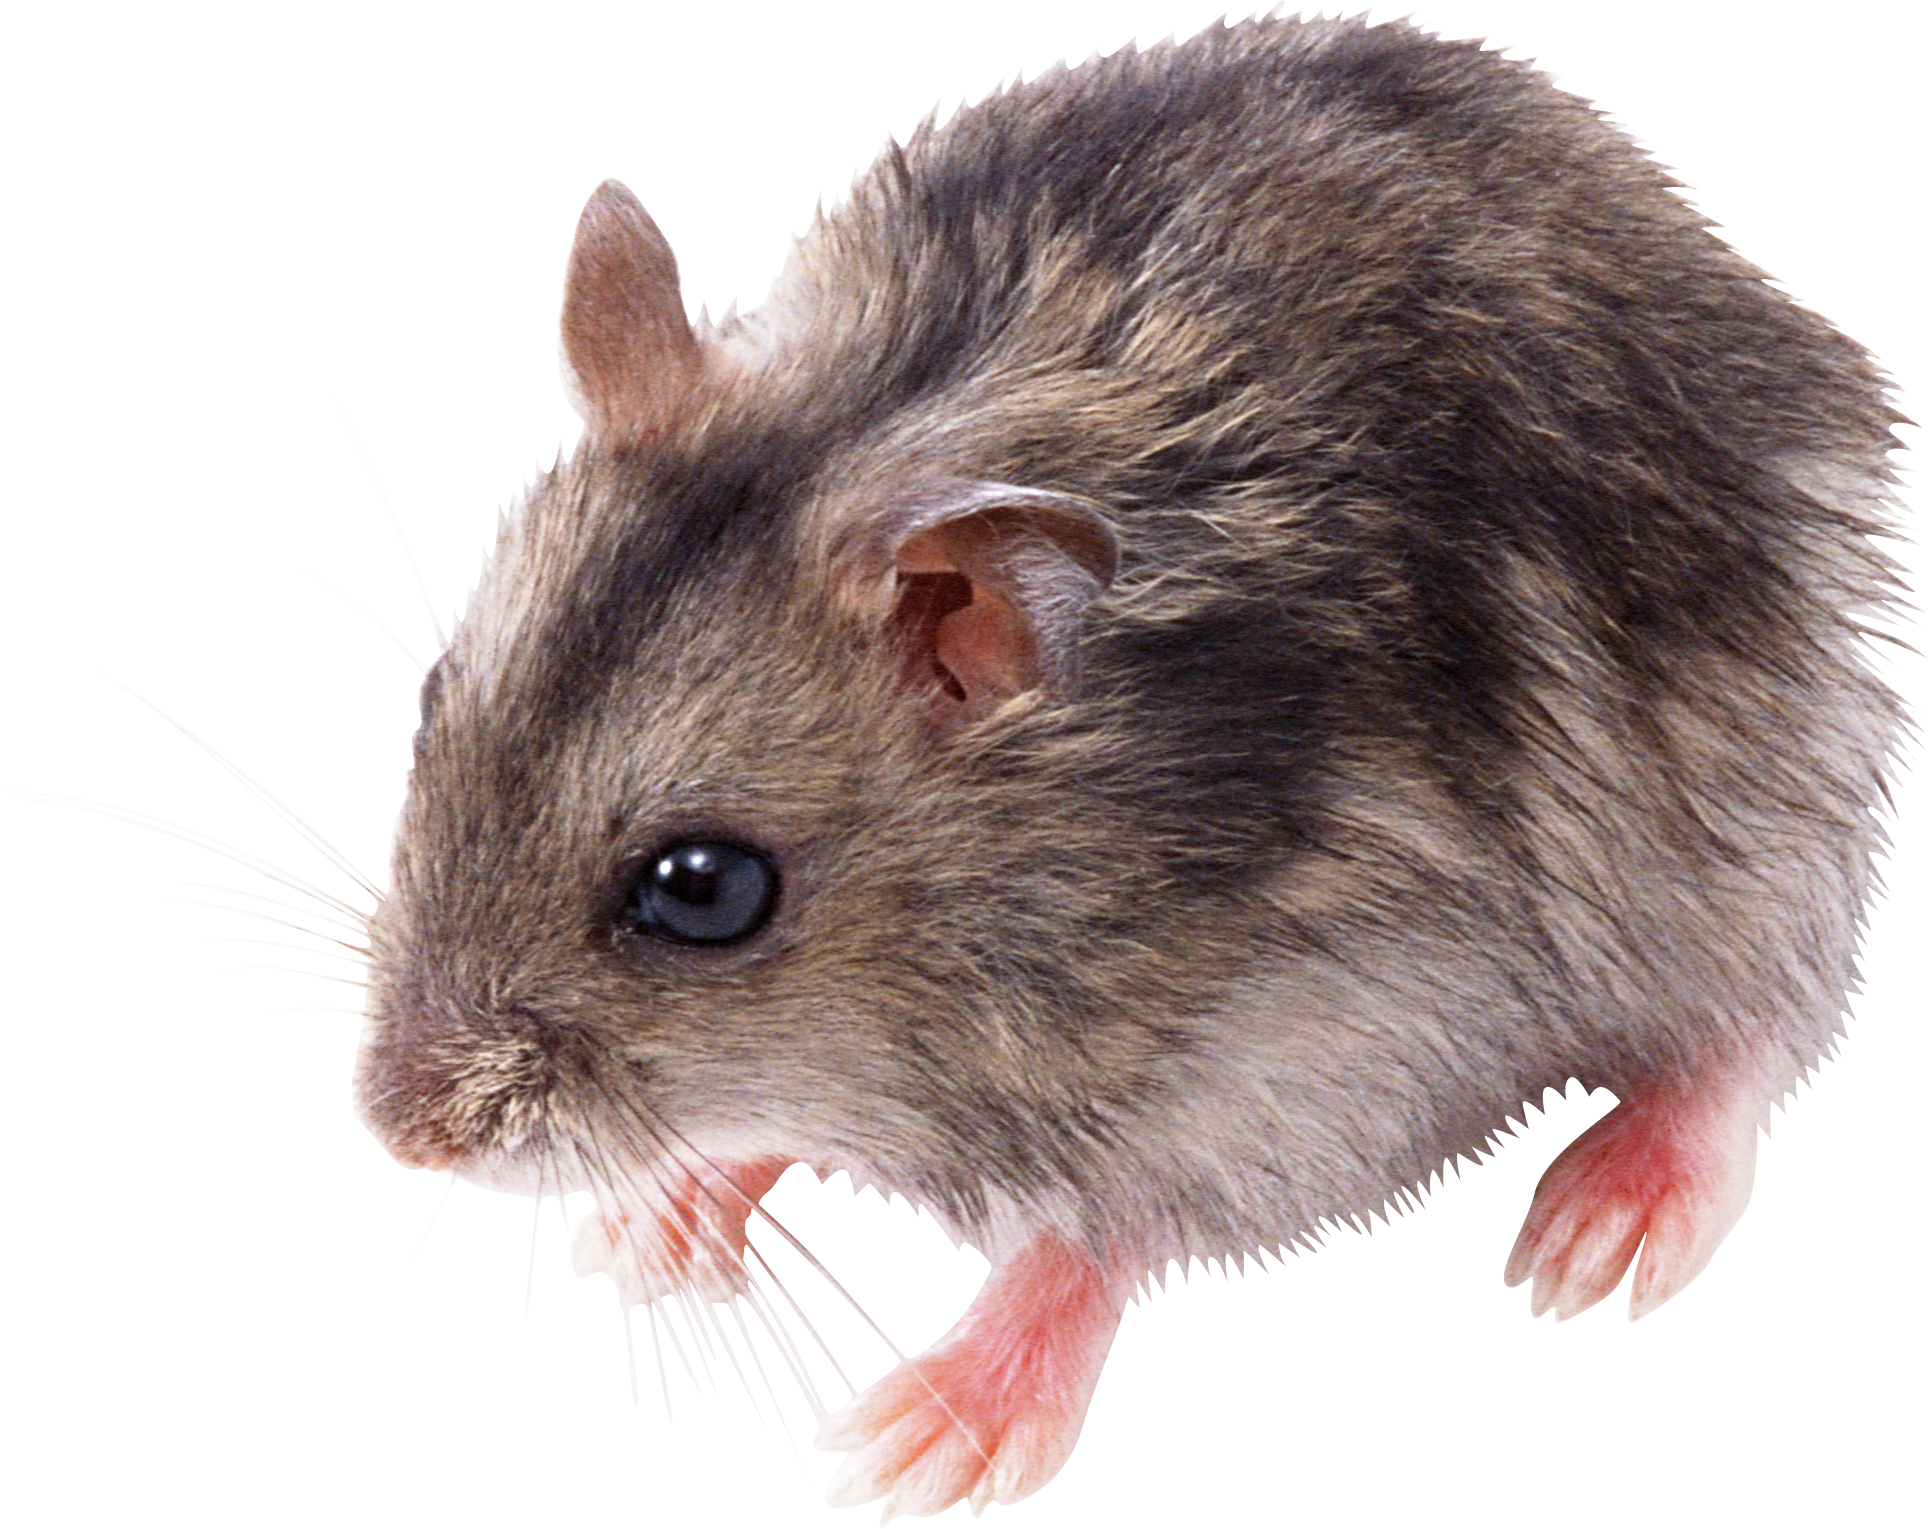 Little Mouse, Rat Png Image - Rat Mouse, Transparent background PNG HD thumbnail